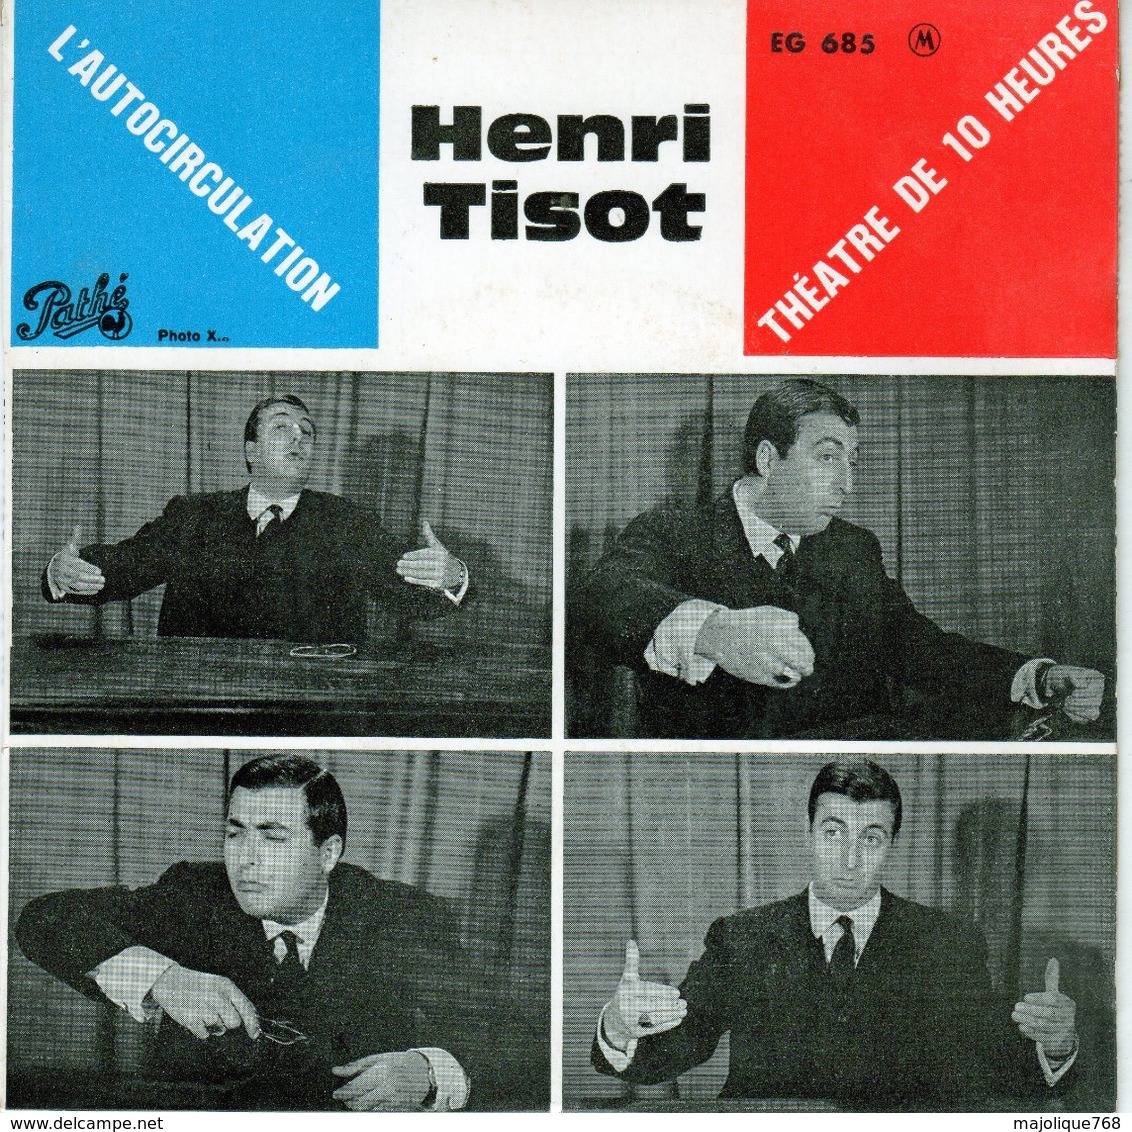 Henri Tisot - L'Autocirculation - Pathé EG 685 - 1962 - Humour, Cabaret